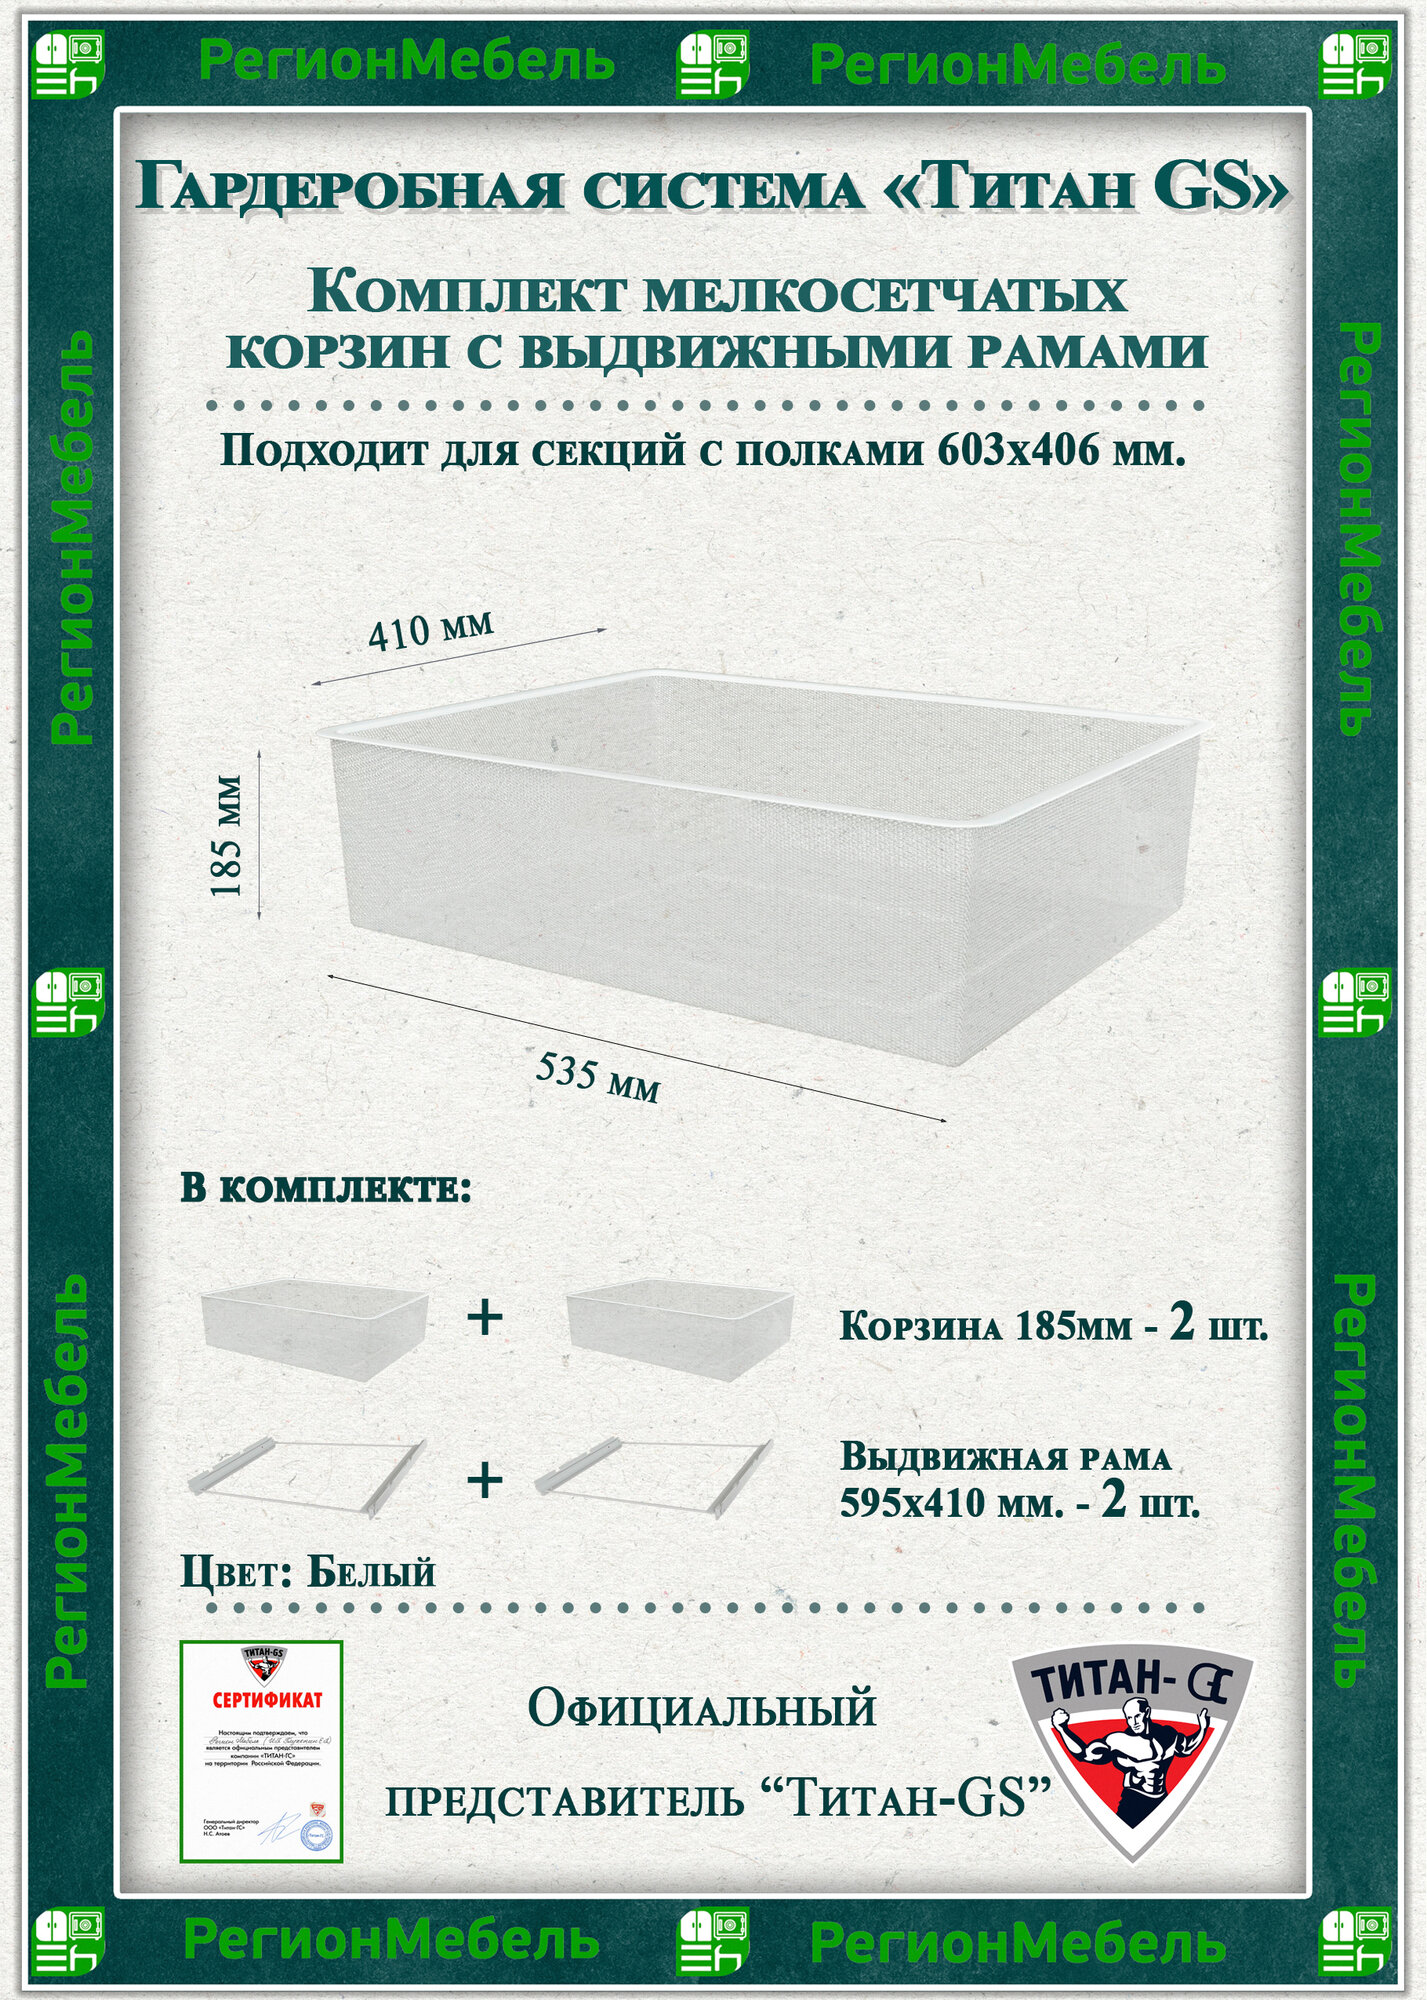 Мелкосетчатая корзина для гардеробной системы "титан-gs" Комплект-2шт (595х410х185) (с рамой) Цвет: Белый